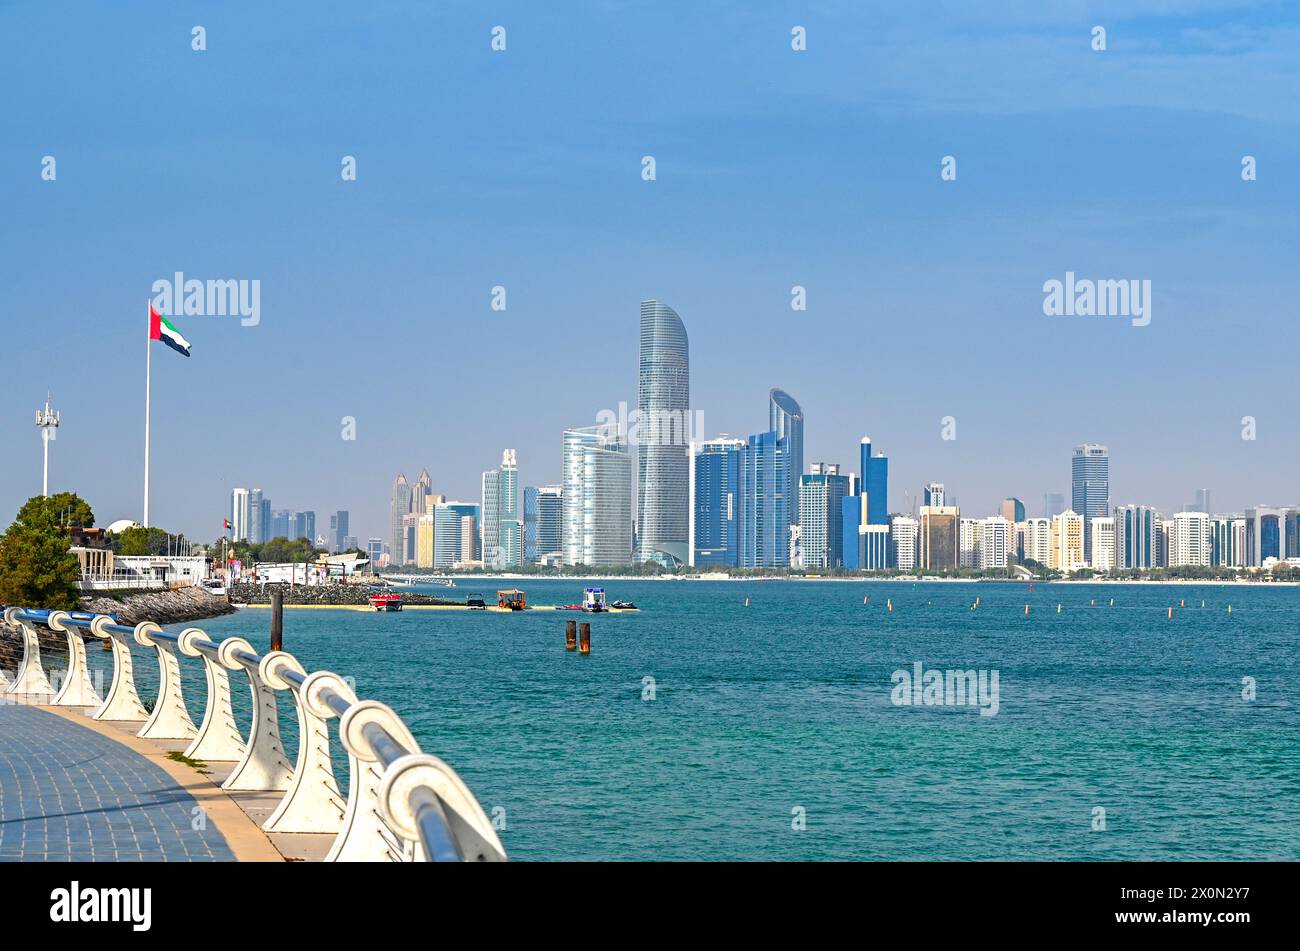 Vue panoramique de la ville d'Abu Dhabi avec mer, gratte-ciel de Corniche en front de mer aux Émirats arabes Unis Banque D'Images